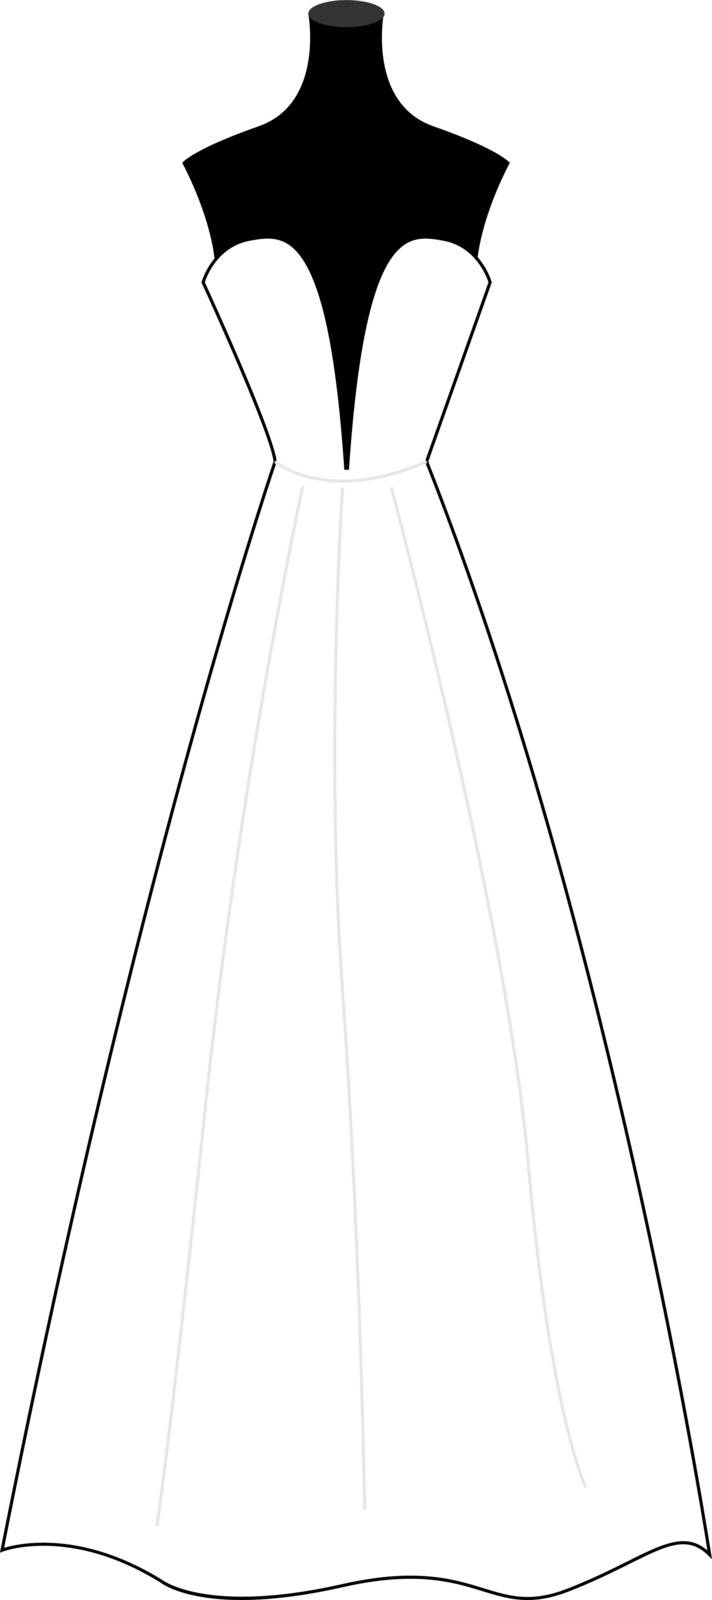 Wedding dress, illustration, vector on white background. by Morphart